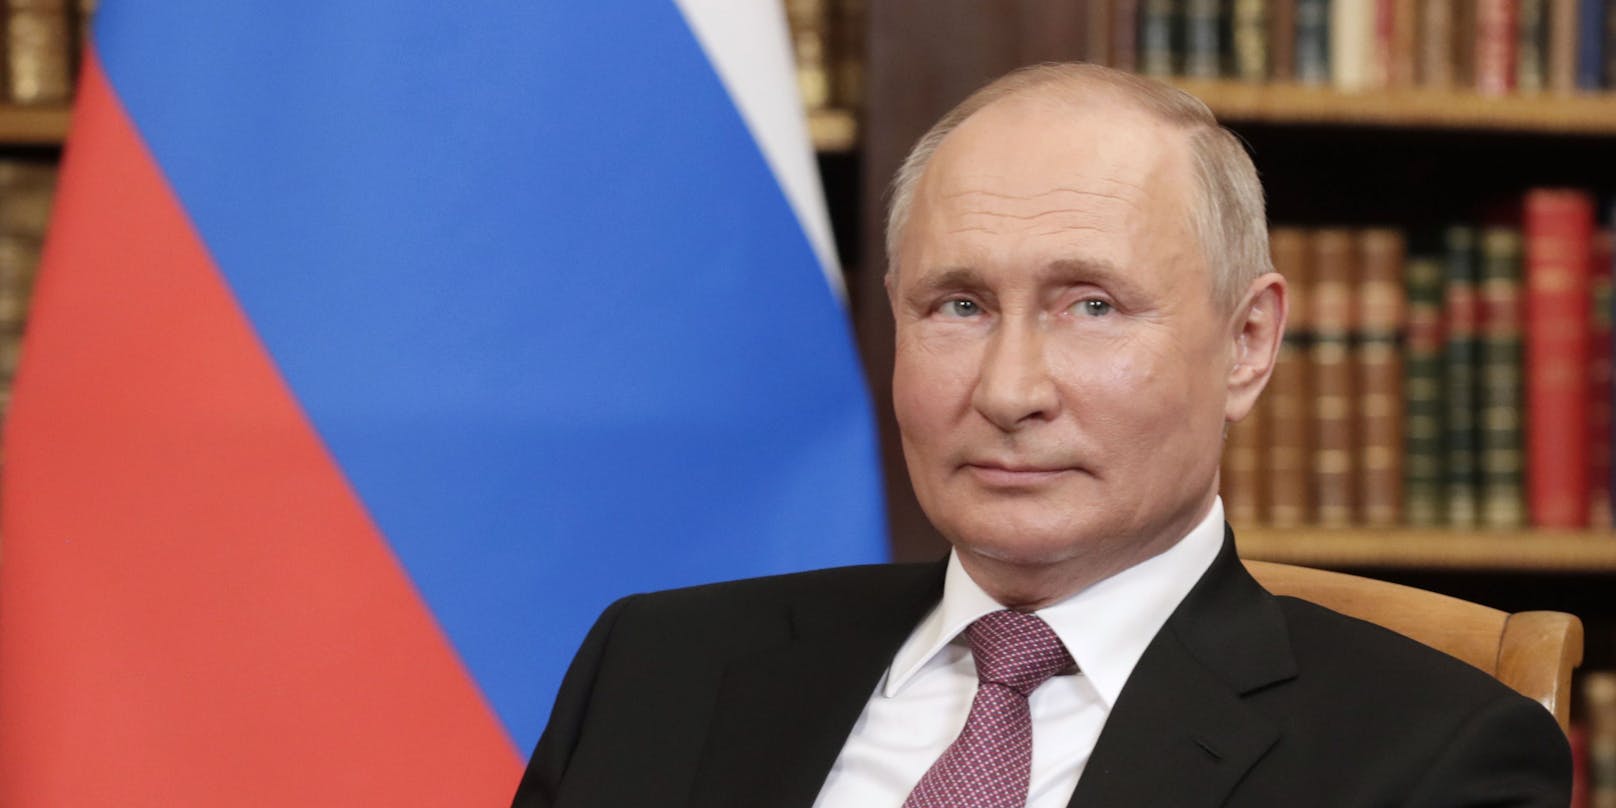 Viele Staaten stellen sich jetzt gegen Russlands Präsident Wladimir Putin. Doch nicht alle sind gegen ihn